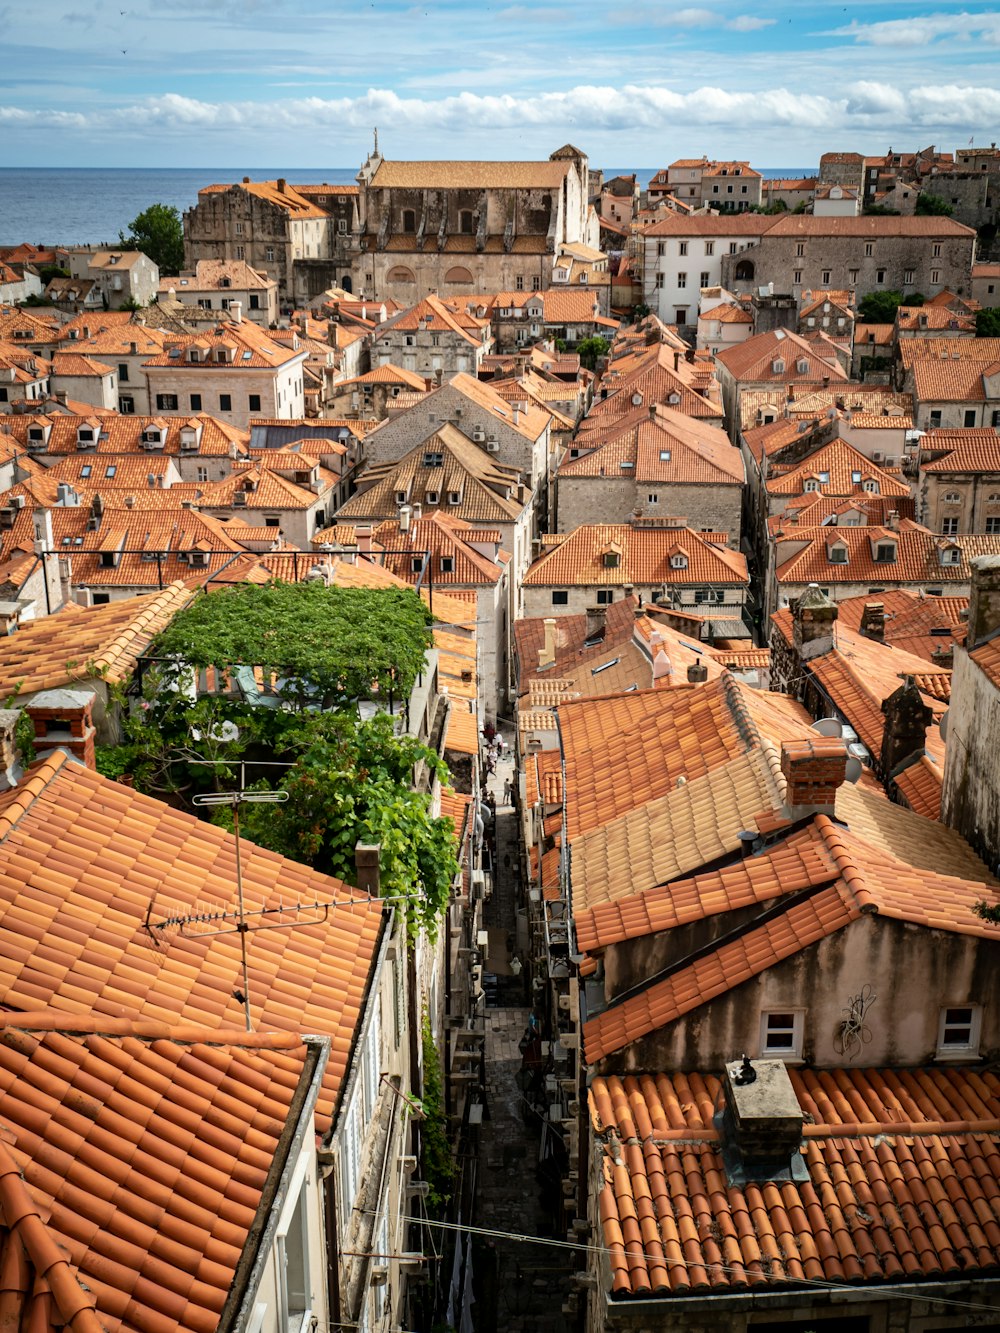 Una vista aérea de una ciudad con techos de tejas rojas